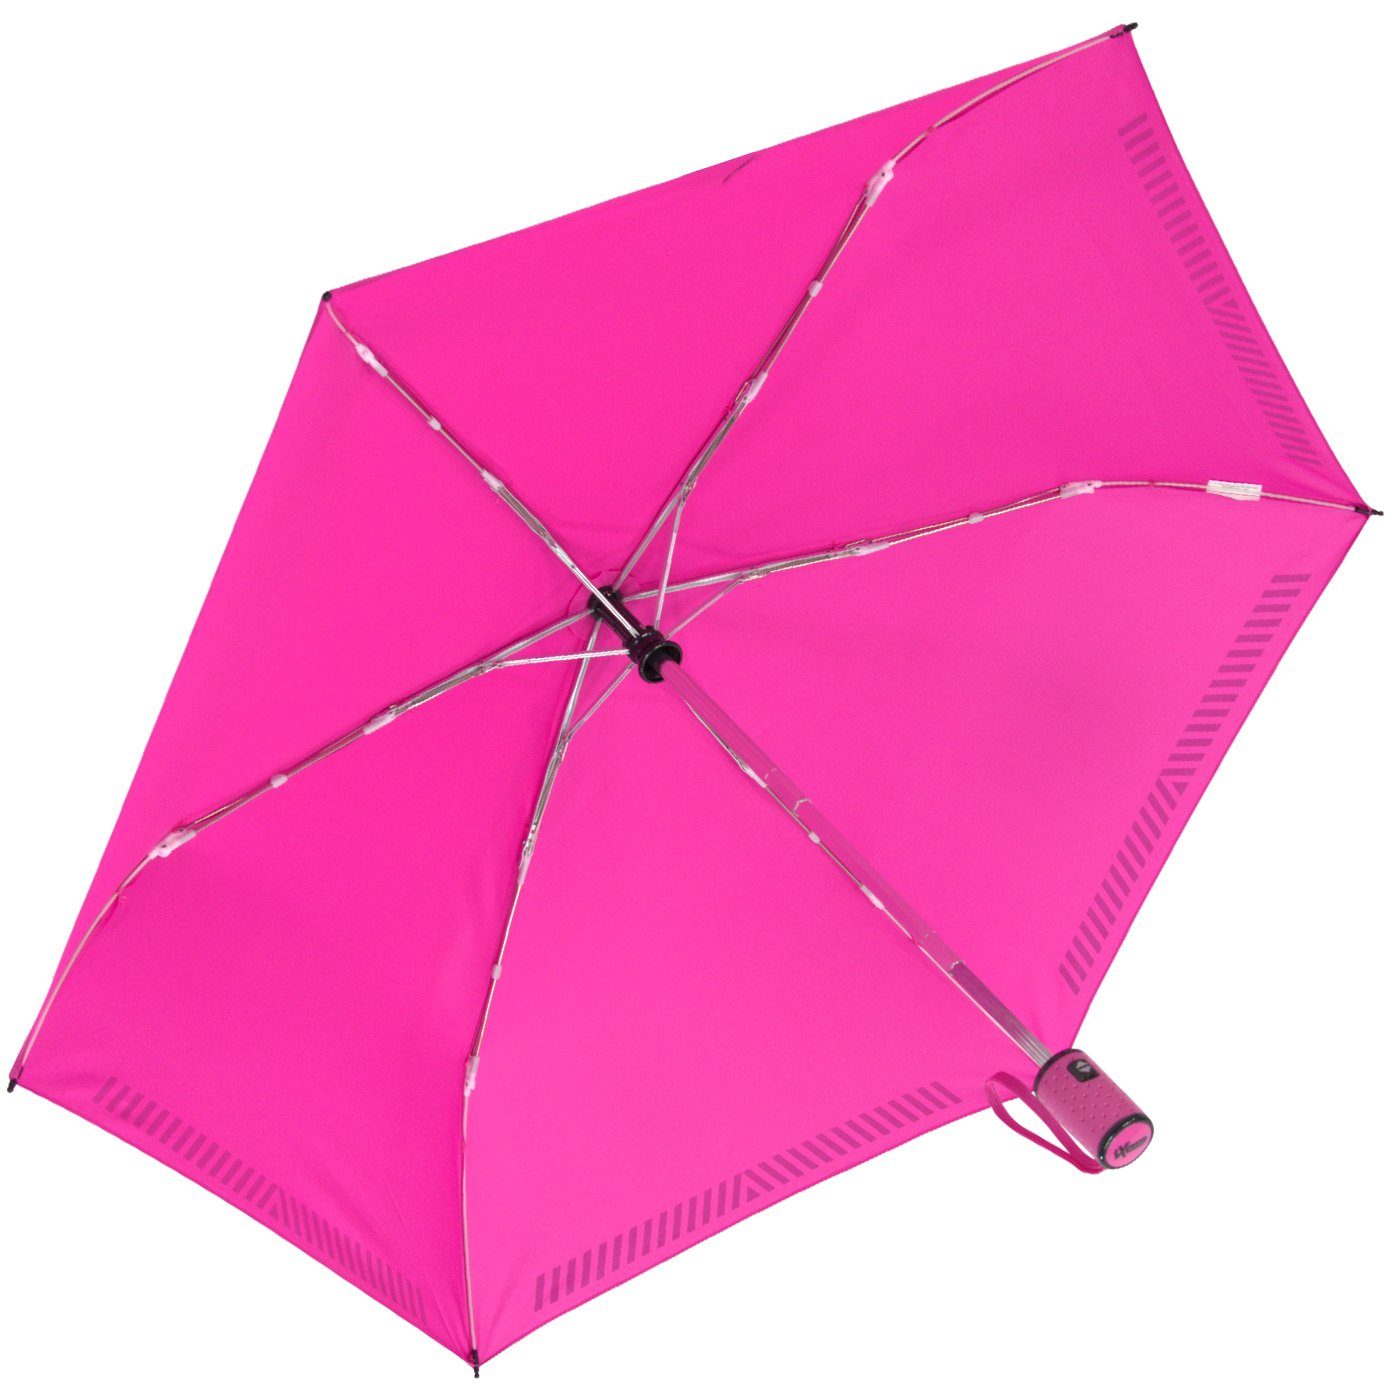 mit iX-brella Reflex-Streifen Auf-Zu-Automatik, - Sicherheit durch Taschenregenschirm Kinderschirm reflektierend, pink neon